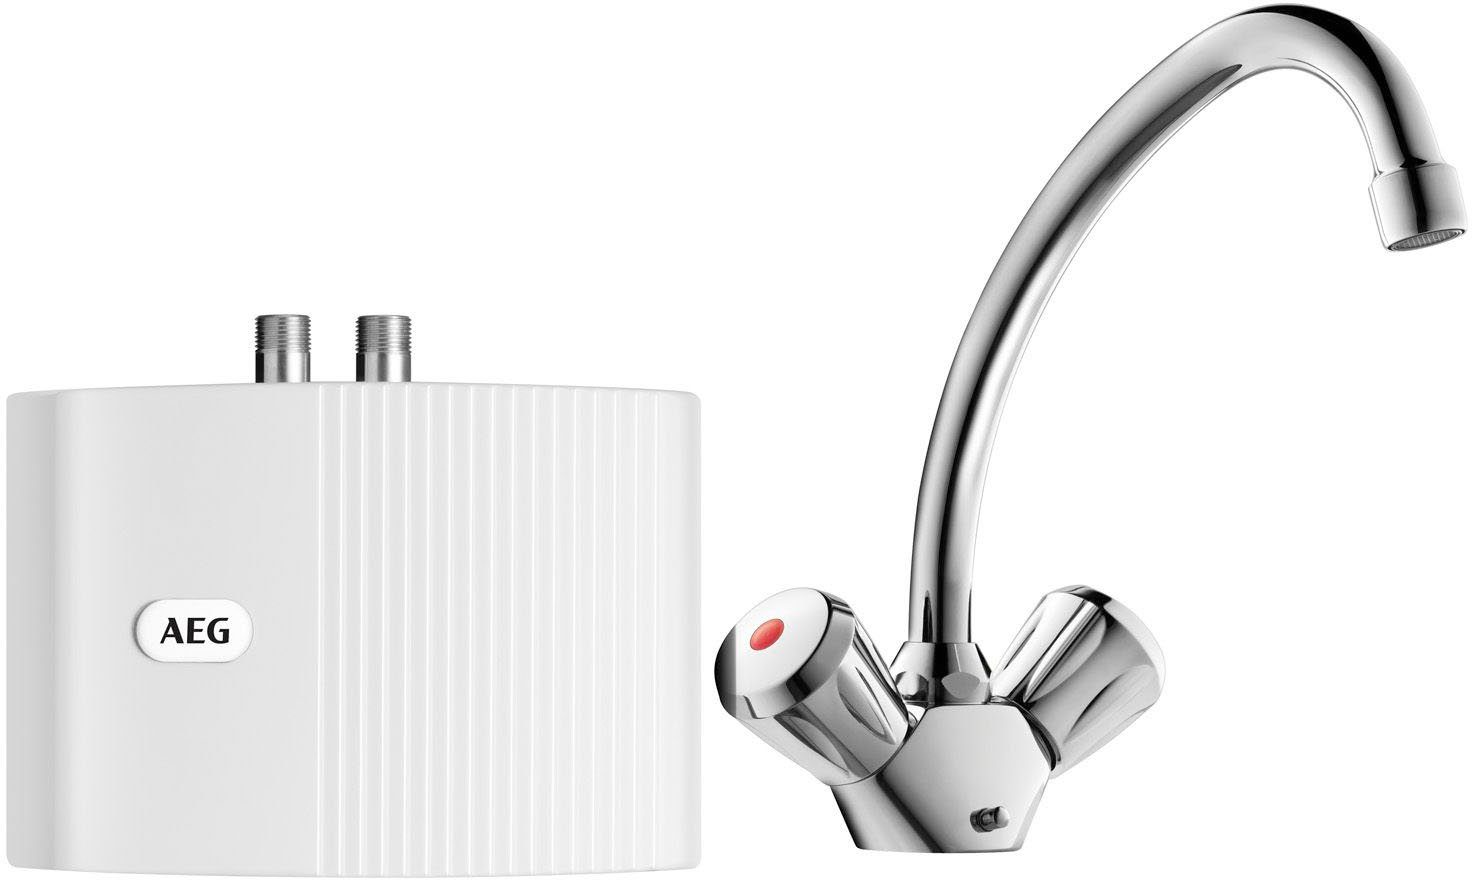 AEG Klein-Durchlauferhitzer MTD 350 hydraulisch, nur fürs Handwaschbecken,  3,5 kW, mit Stecker, druckfest+drucklos